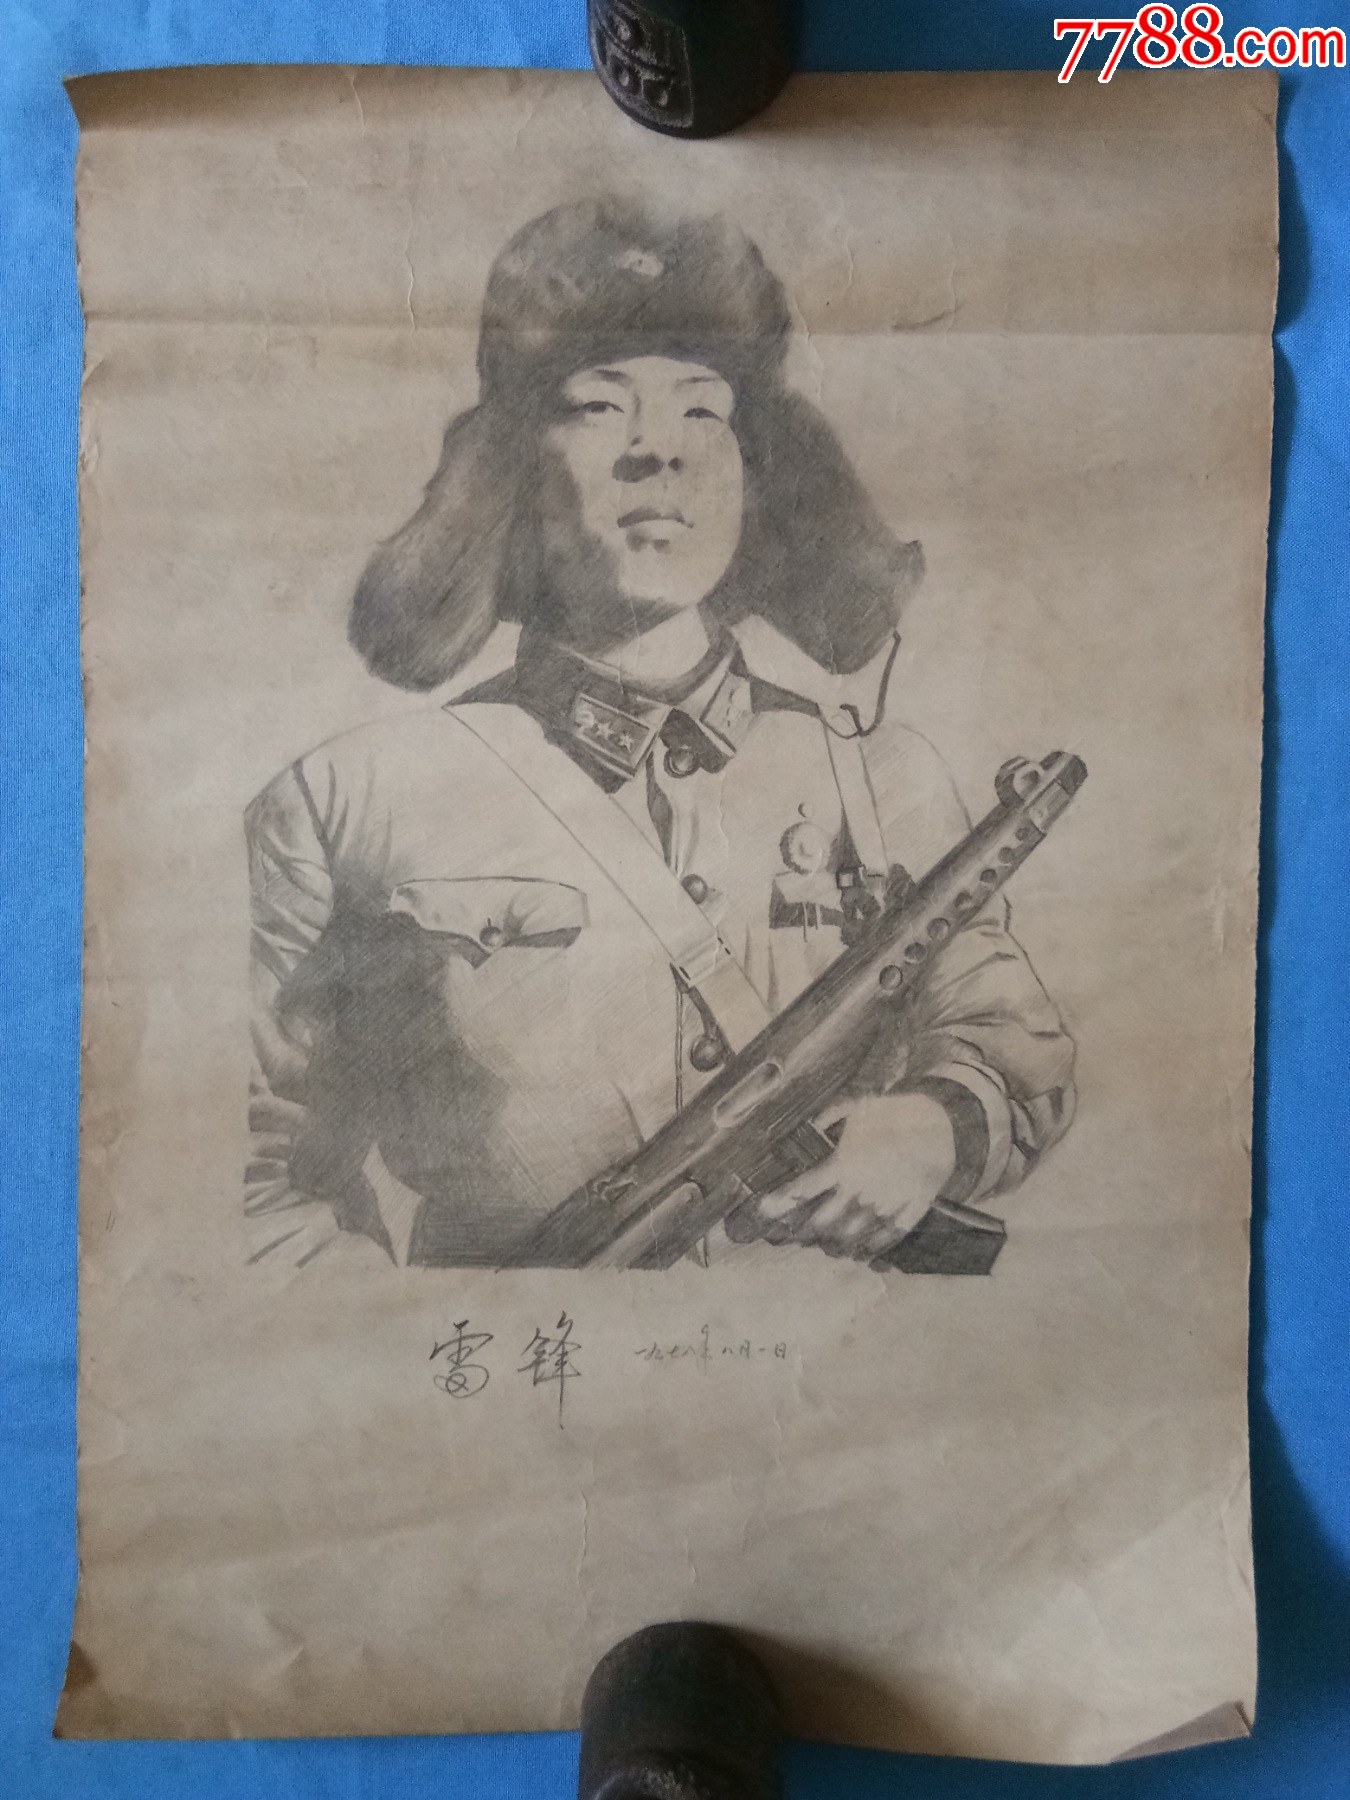 1978年人物素描肖像画共产主义战士最美奋斗者英雄雷锋同志经典老素描